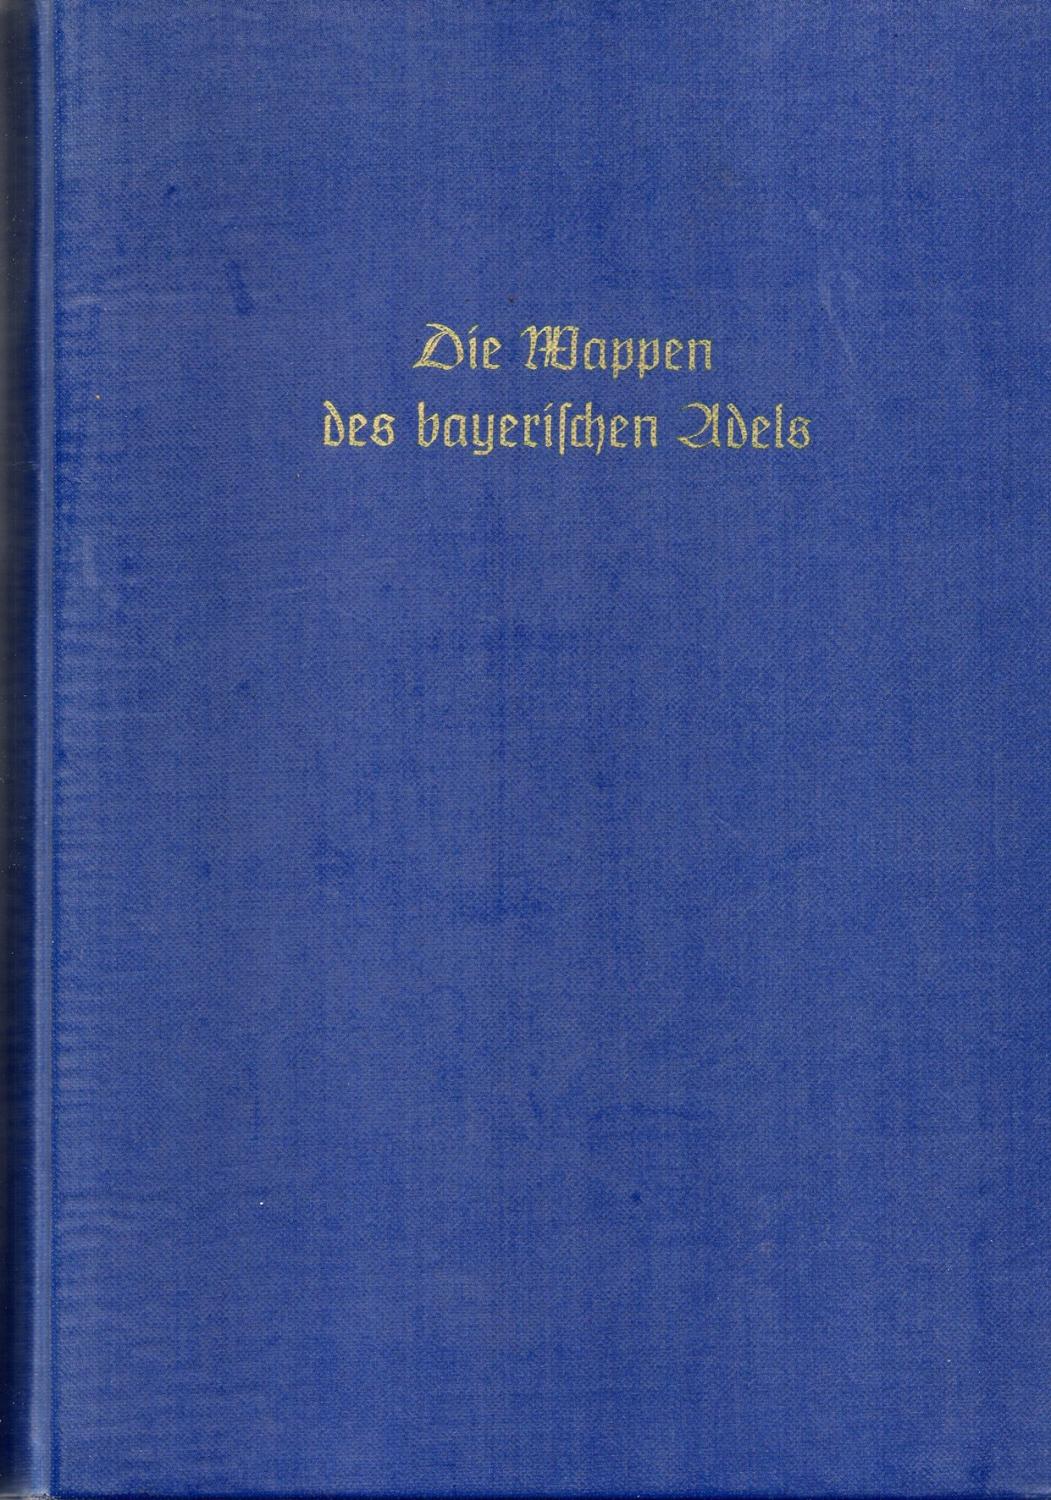 Die Wappen des bayerischen Adels. J. Siebmacher`s großes Wappenbuch Band 2, Nachdruck - Otto Titan von Hefner / Gustav Adalbert Seyler